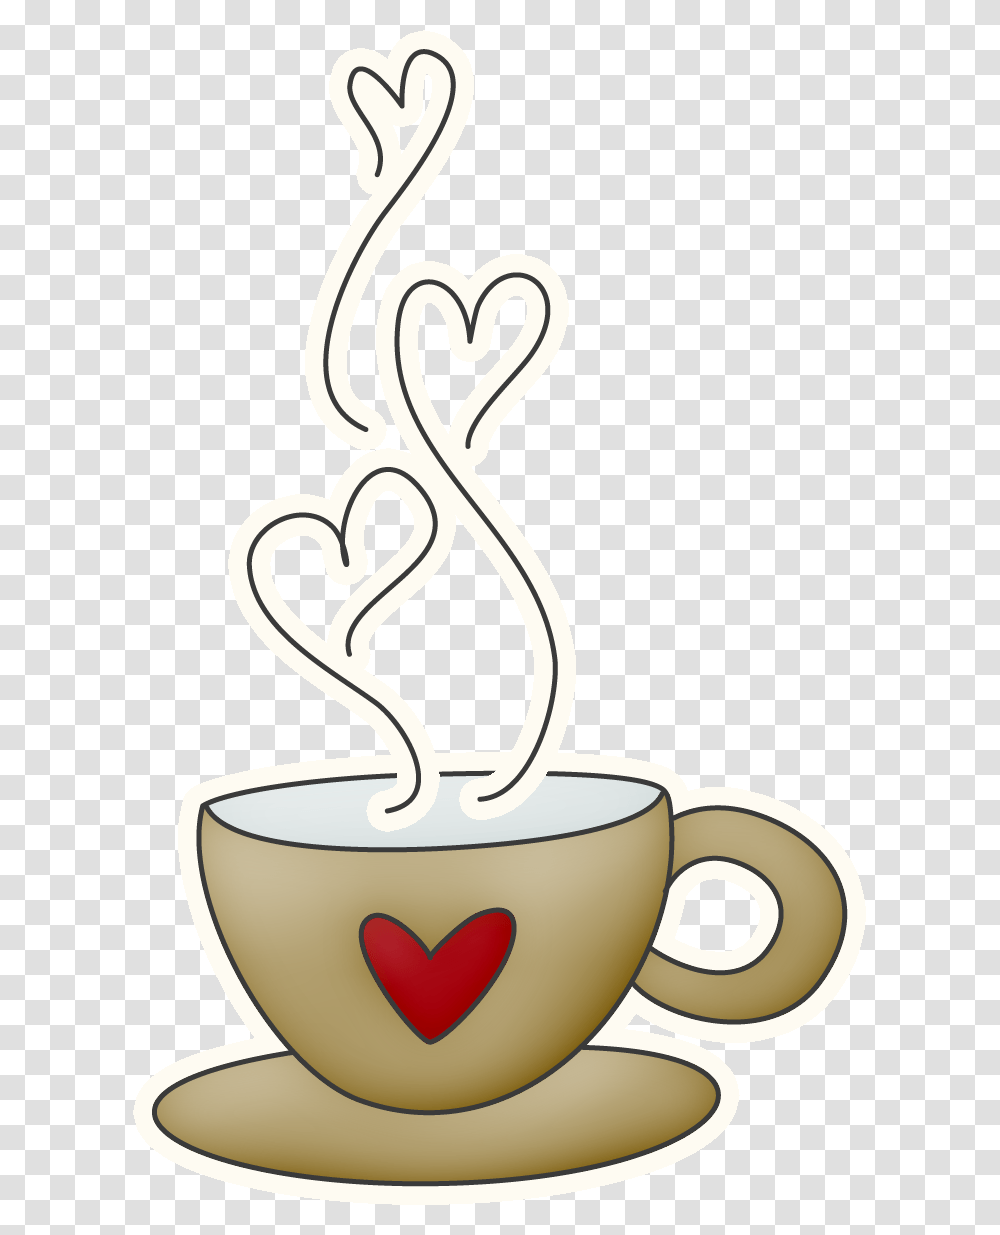 Nice Winter Clip Art Taza De Chocolate Animado, Coffee Cup, Beverage, Drink, Espresso Transparent Png